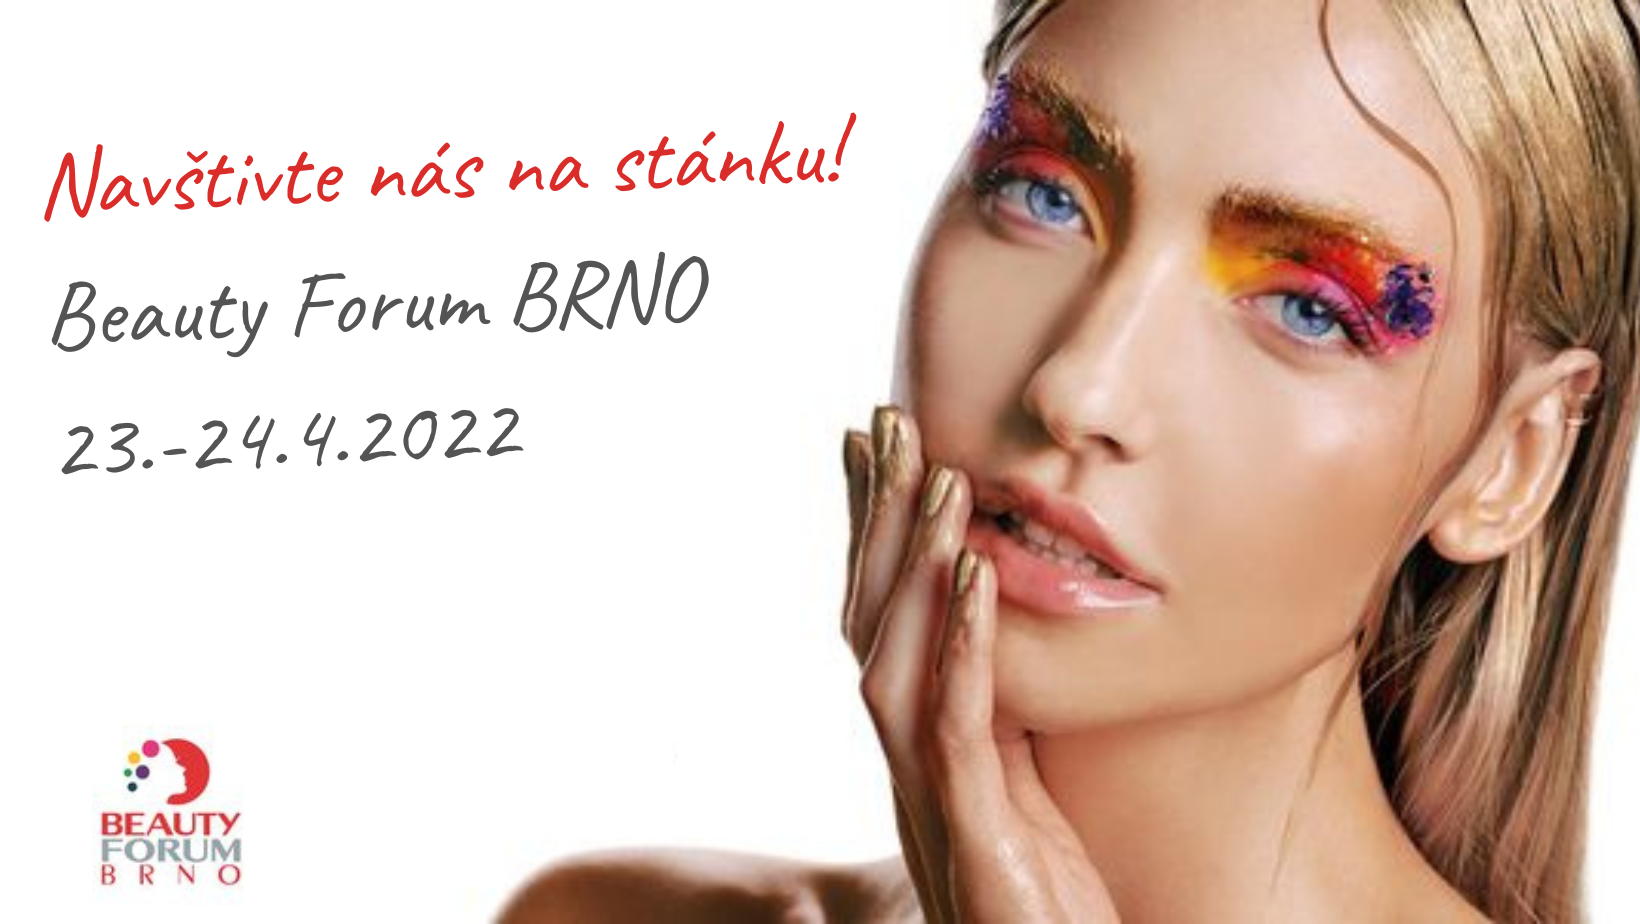 Navštivte stánek DR.BELTER na Beauty Forum Brno 2022